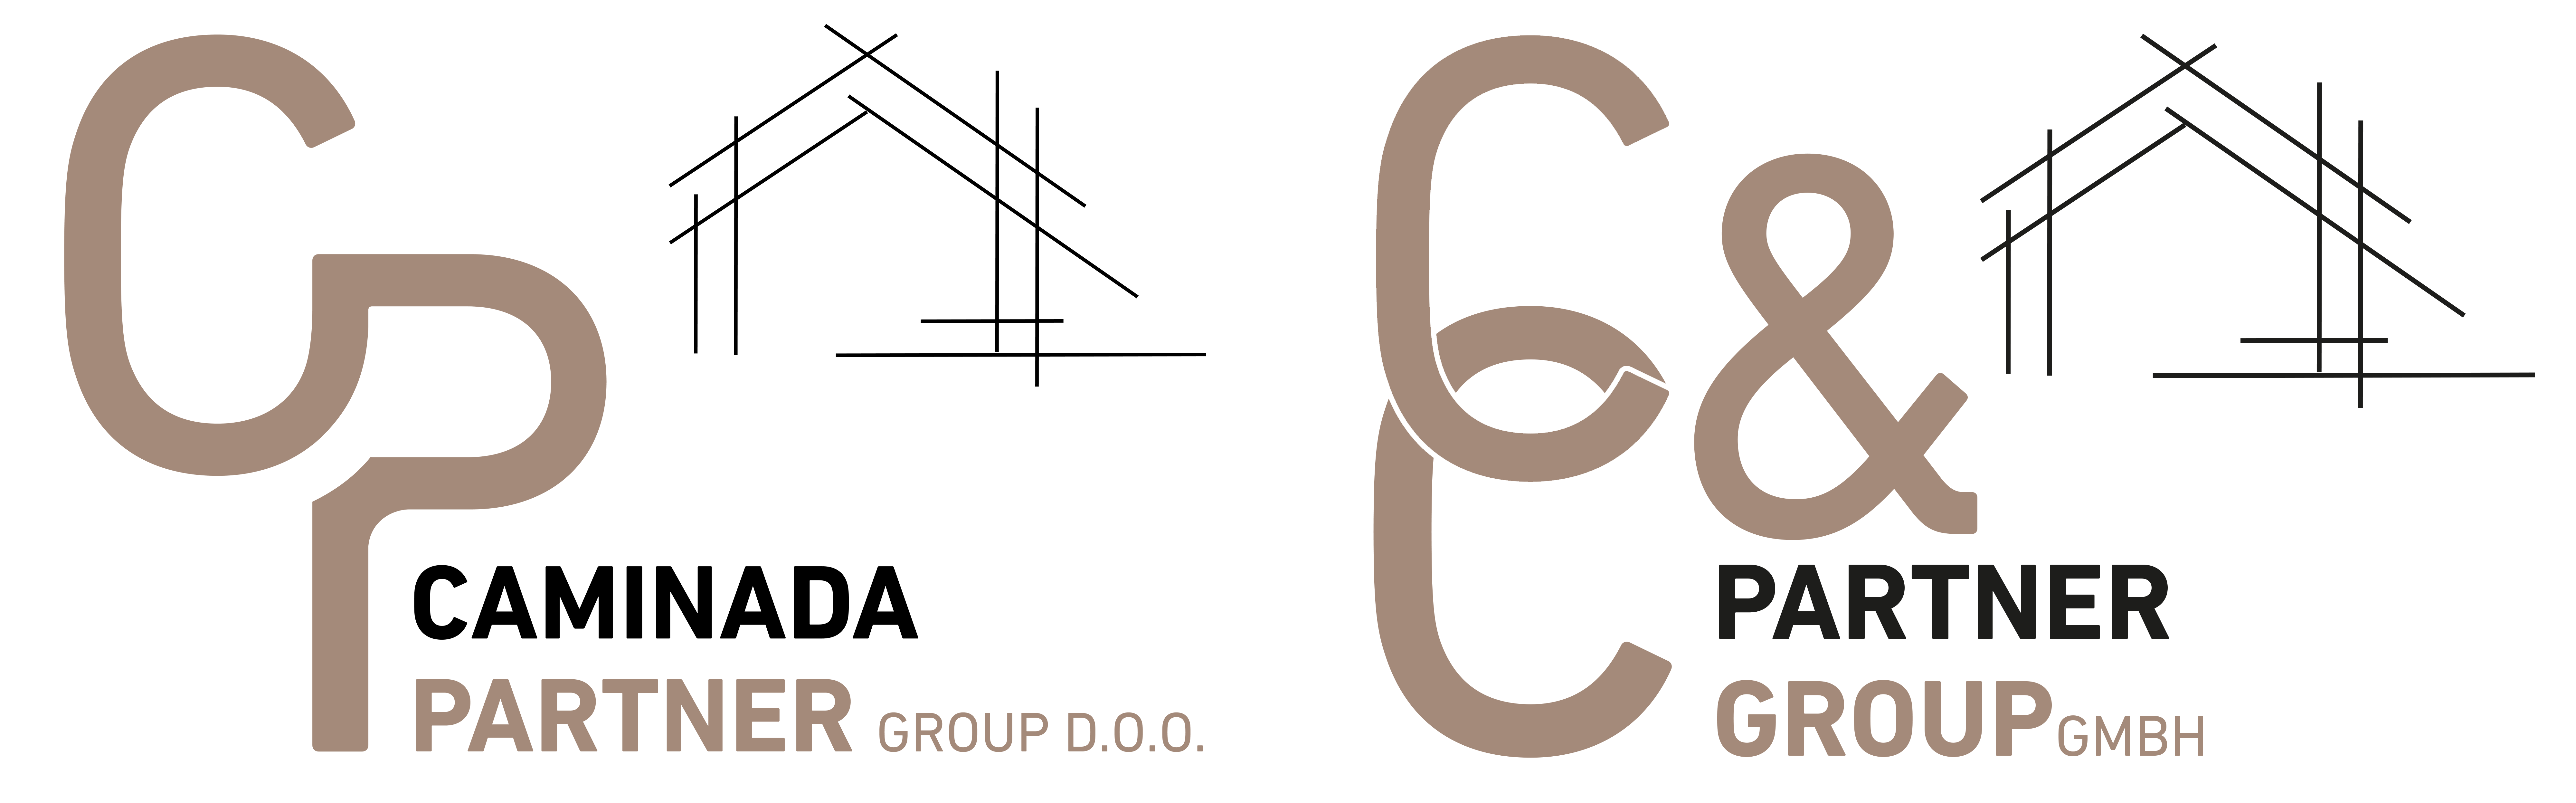 Logos_Caminada_Partner_Group_doo_und_C_und_C_Partner_Group_GmbH_klein_